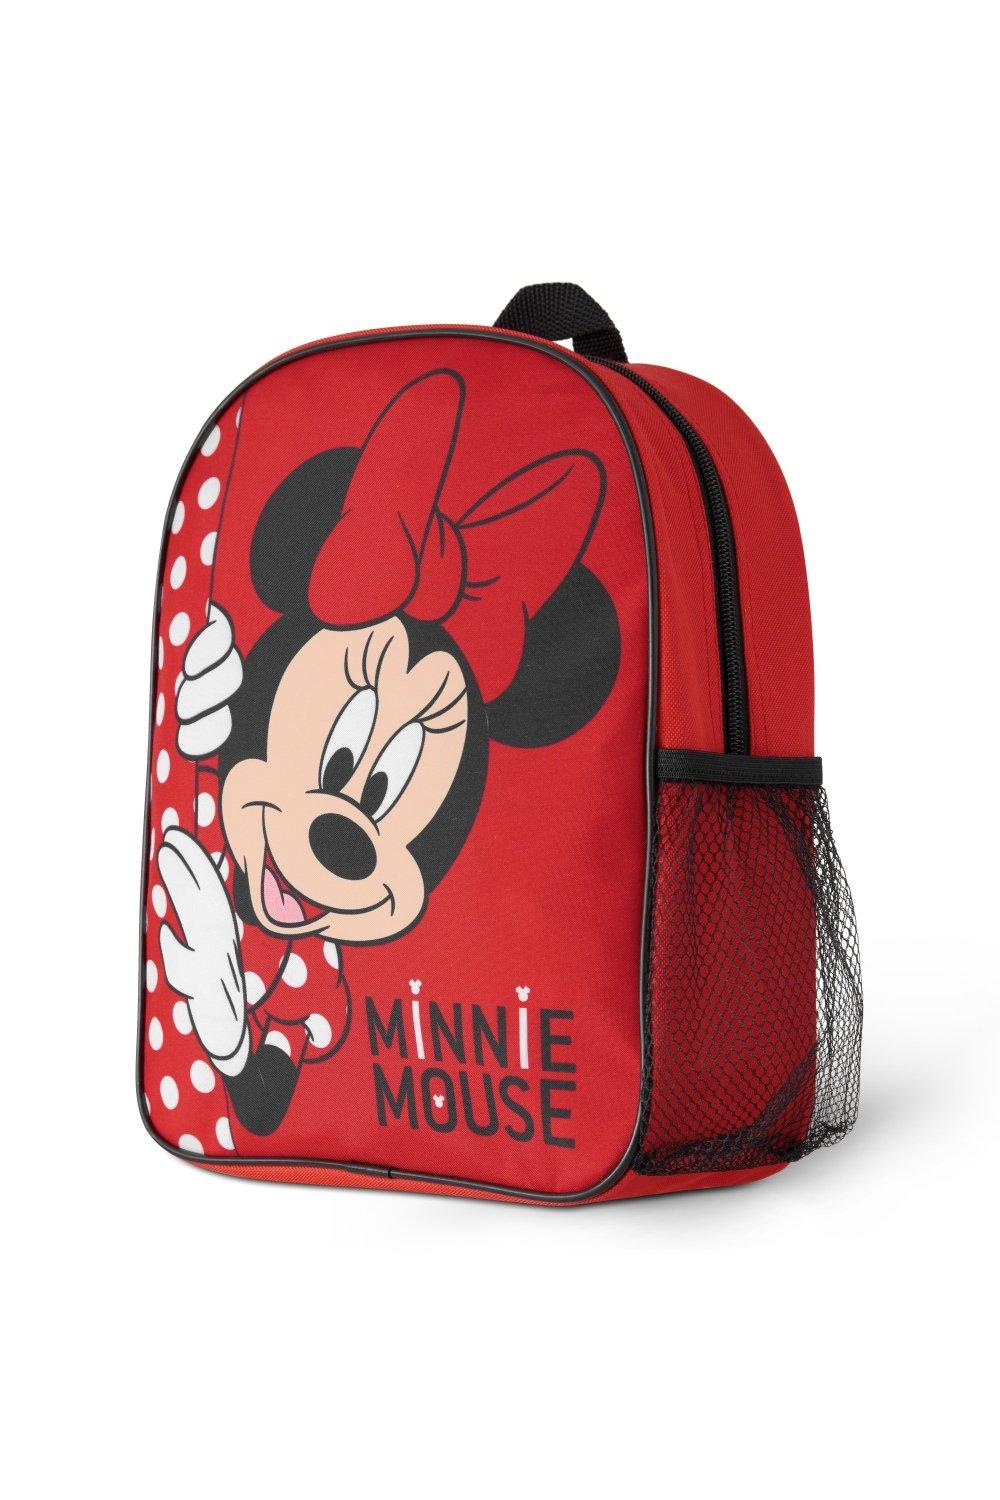 Рюкзак для девочек Минни Маус Disney, красный рюкзак минни маус mickey mouse желтый 1